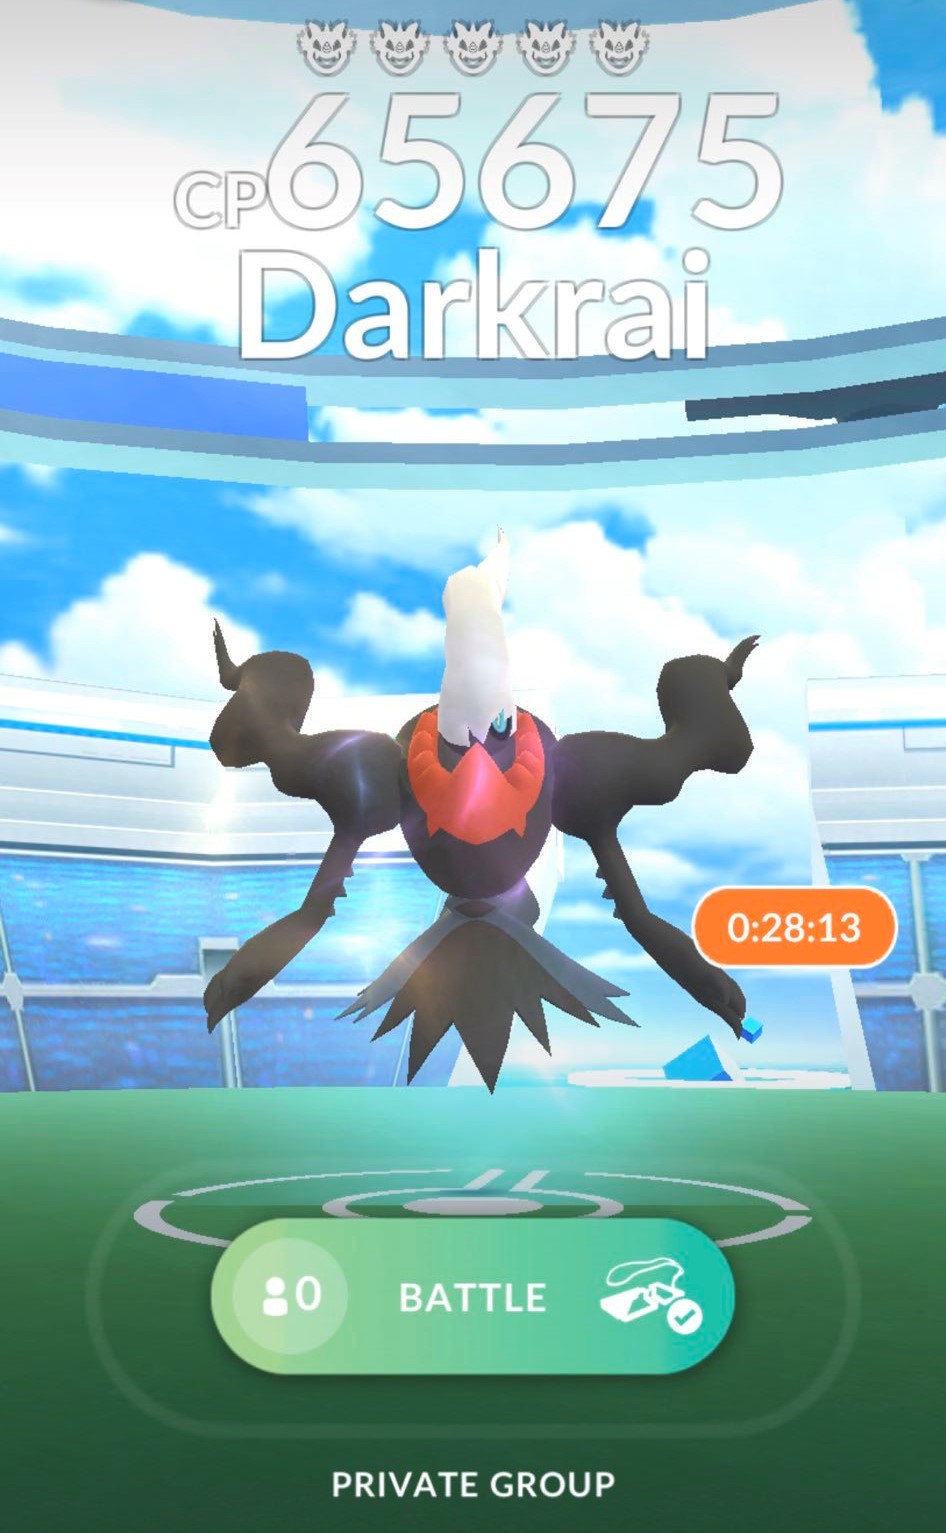 Darkrai Raid Hour available in Pokémon 